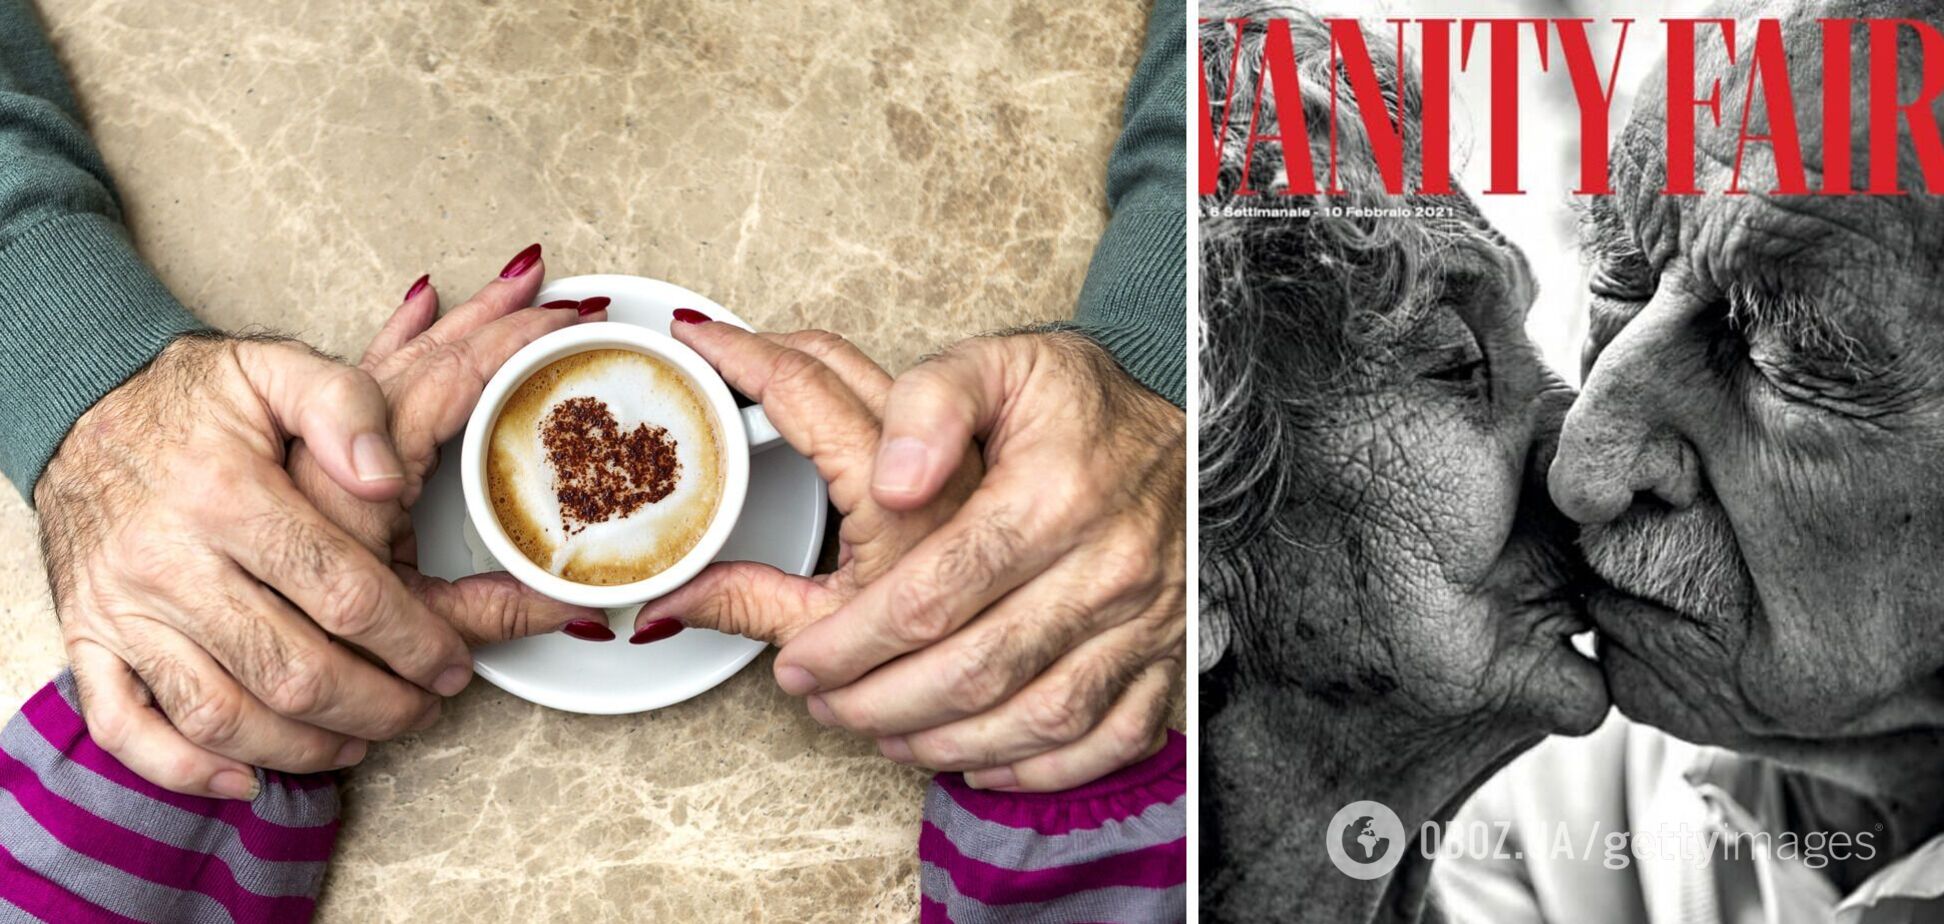 Італійський журнал присвятив обкладинку подружжю, яке разом уже 80 років. Зворушливі фото